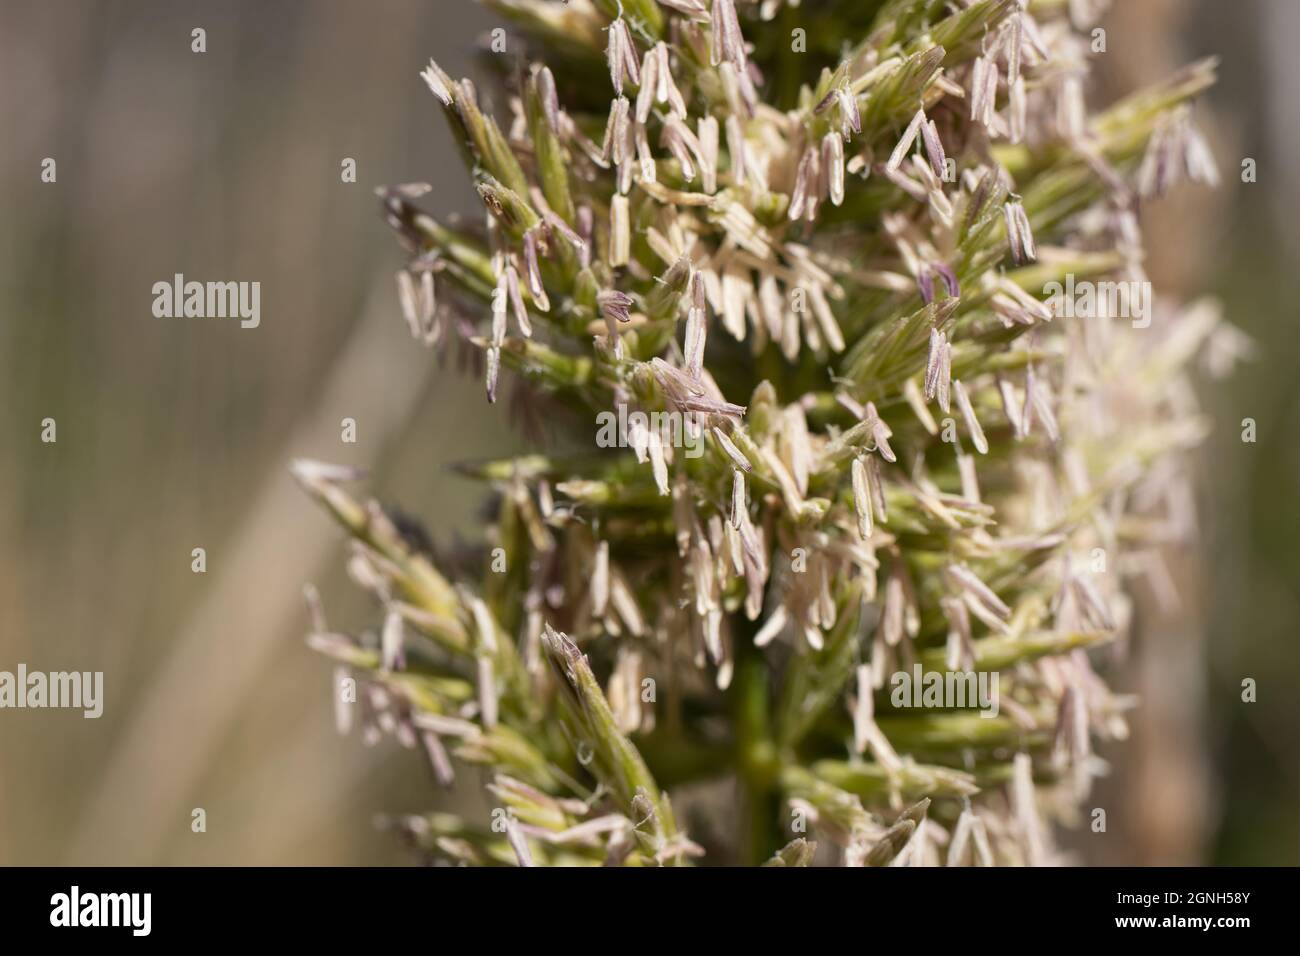 Inflorescences de la panicule blanche de Wildrye géant, Elymus Condensatus, Poaceae, originaire de Solstice Canyon NPS, Santa Monica Mountains, Springtime. Banque D'Images